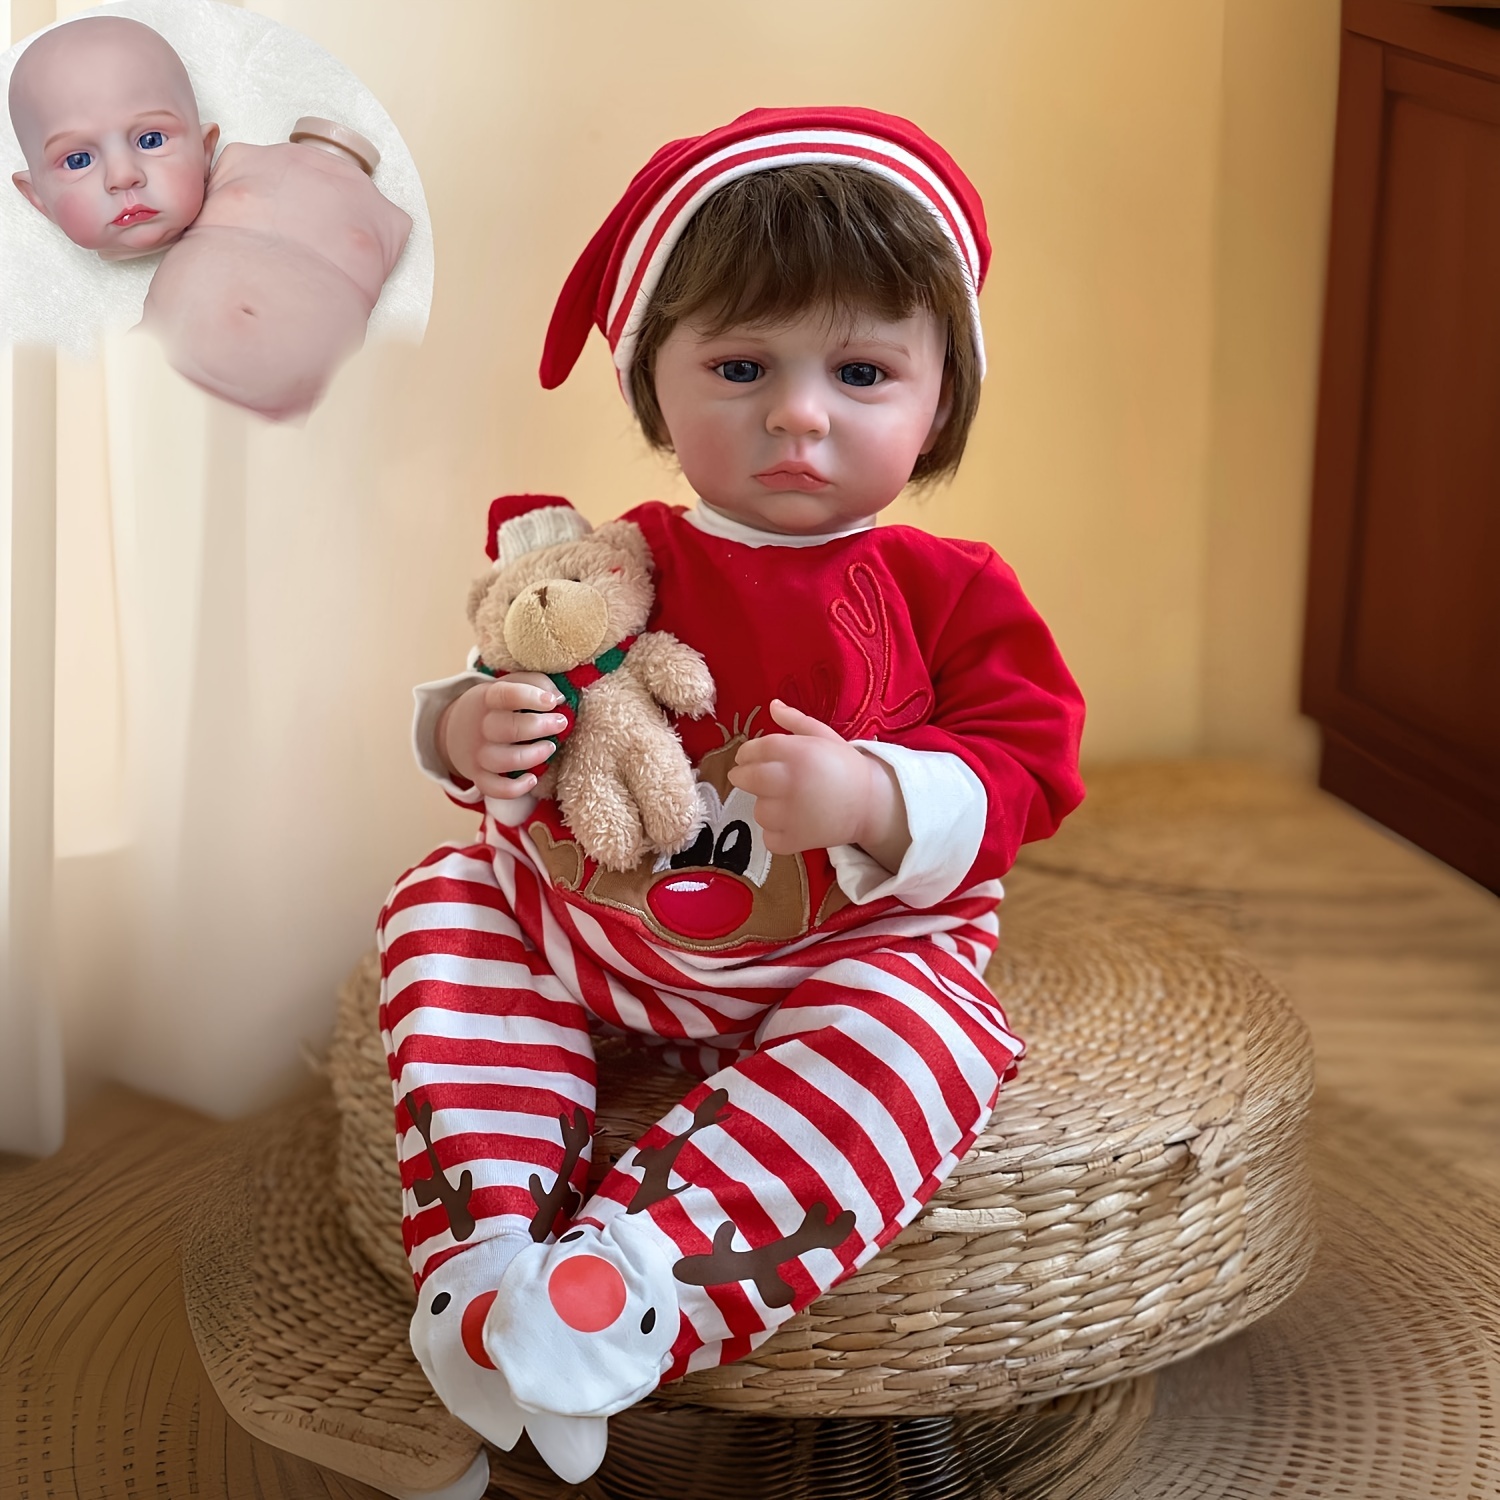 Handmade Soft Silicone Reborn Boy Baby Doll Toy Realistic - Temu Canada